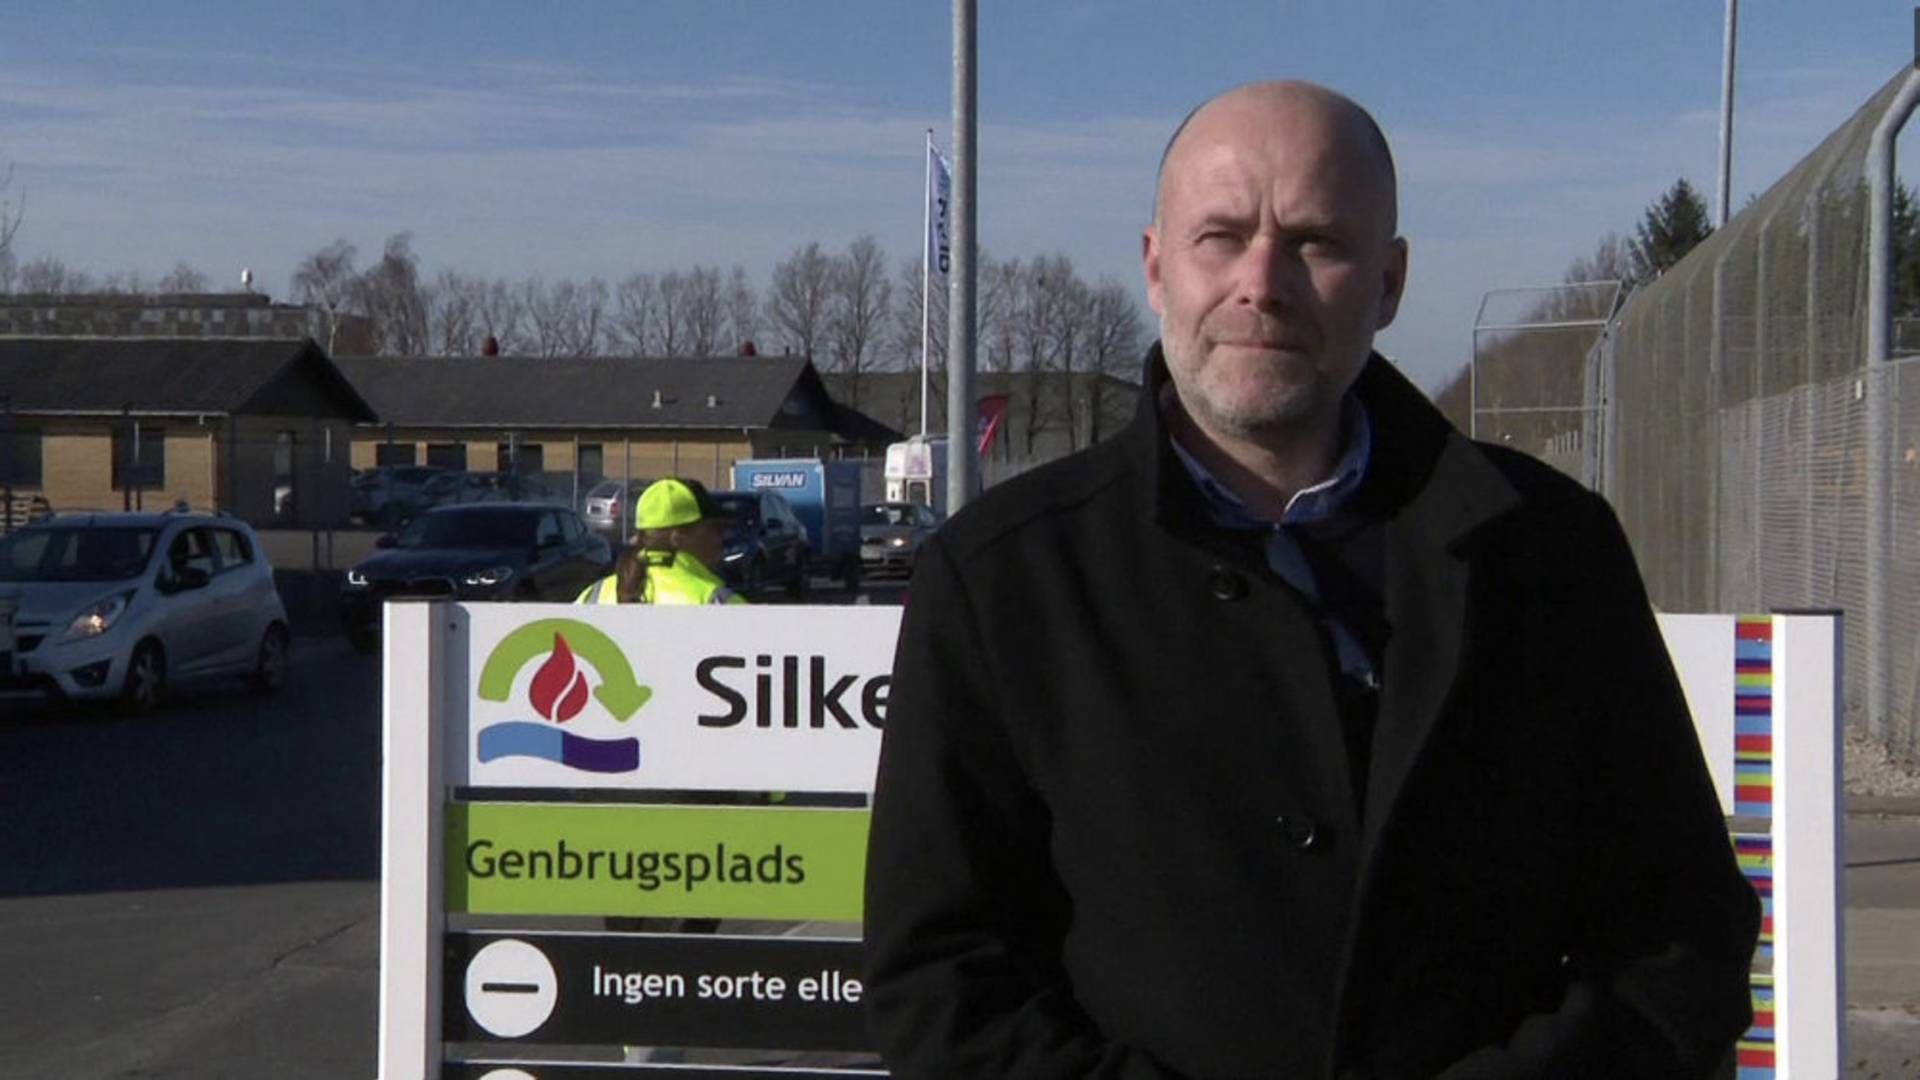 Jarl Gorridsen, bestyrelsesformand i Silkeborg Forsyning, mener det er forsvarligt at holde genbrugspladserne åbne. De følger alle myndighedernes anbefalinger. | Foto: Ole Jermiin Dieserud / TV2 Østjylland